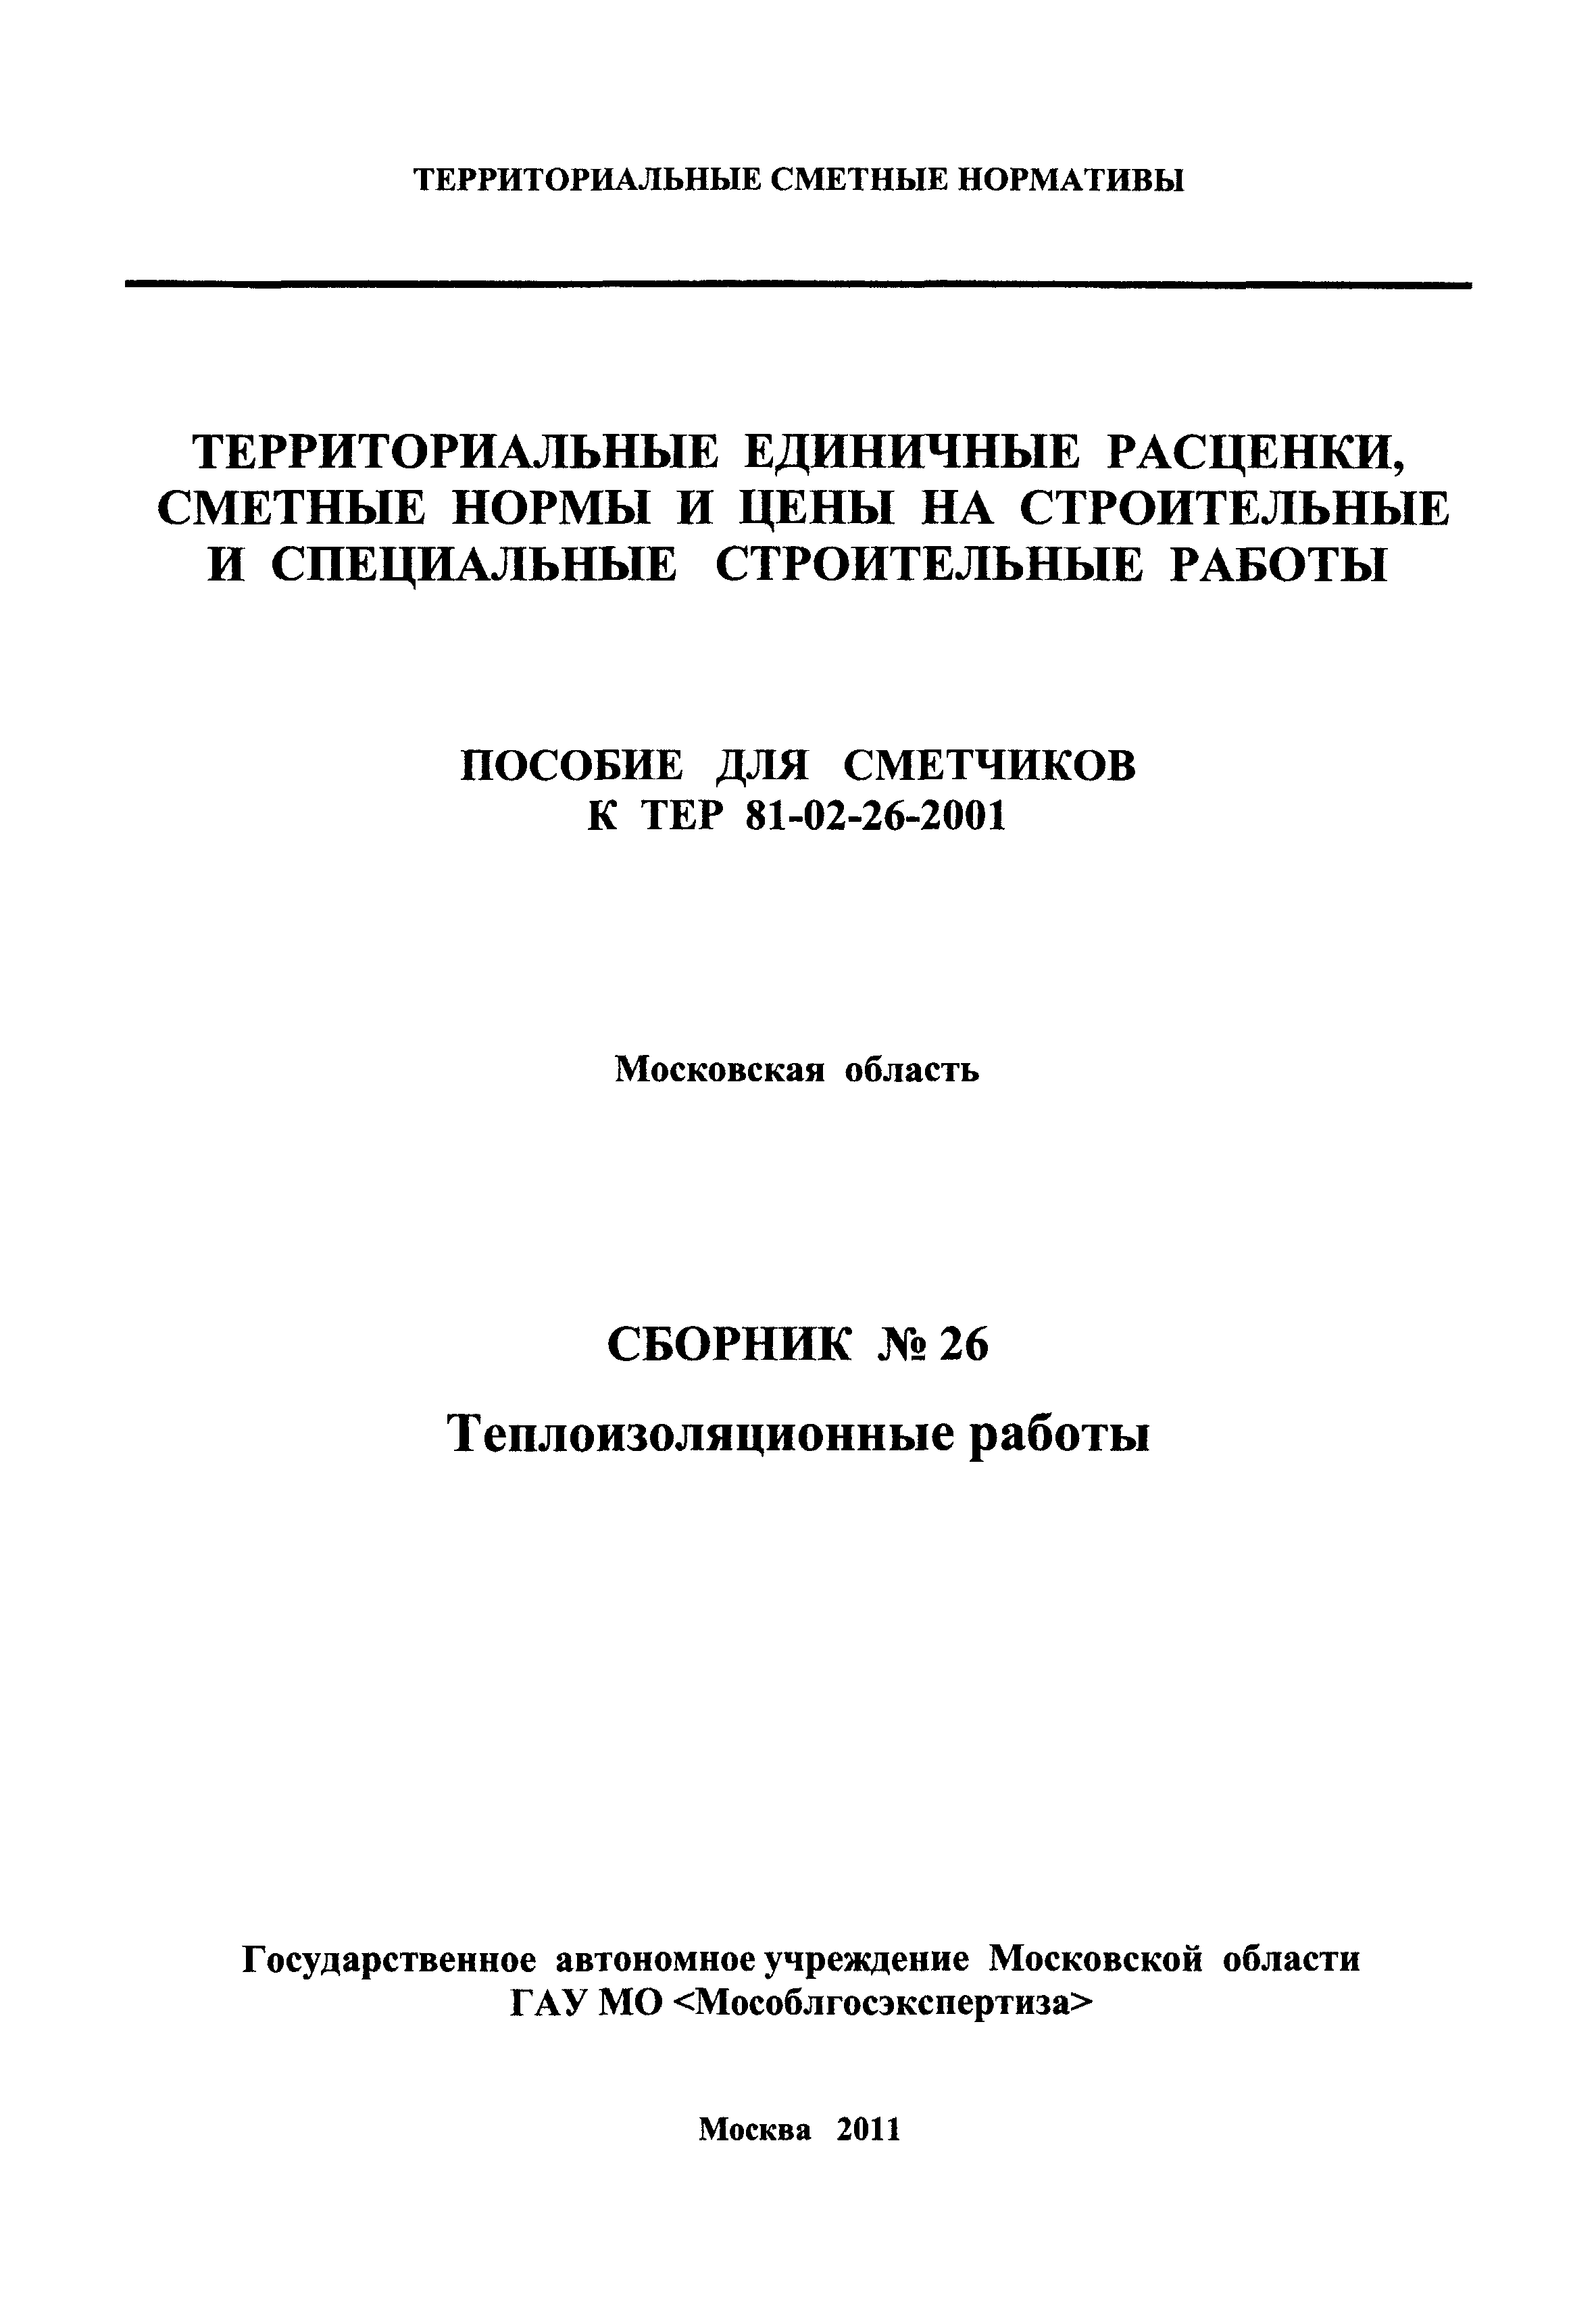 ГЭСНПиТЕР 2001-26 Московской области